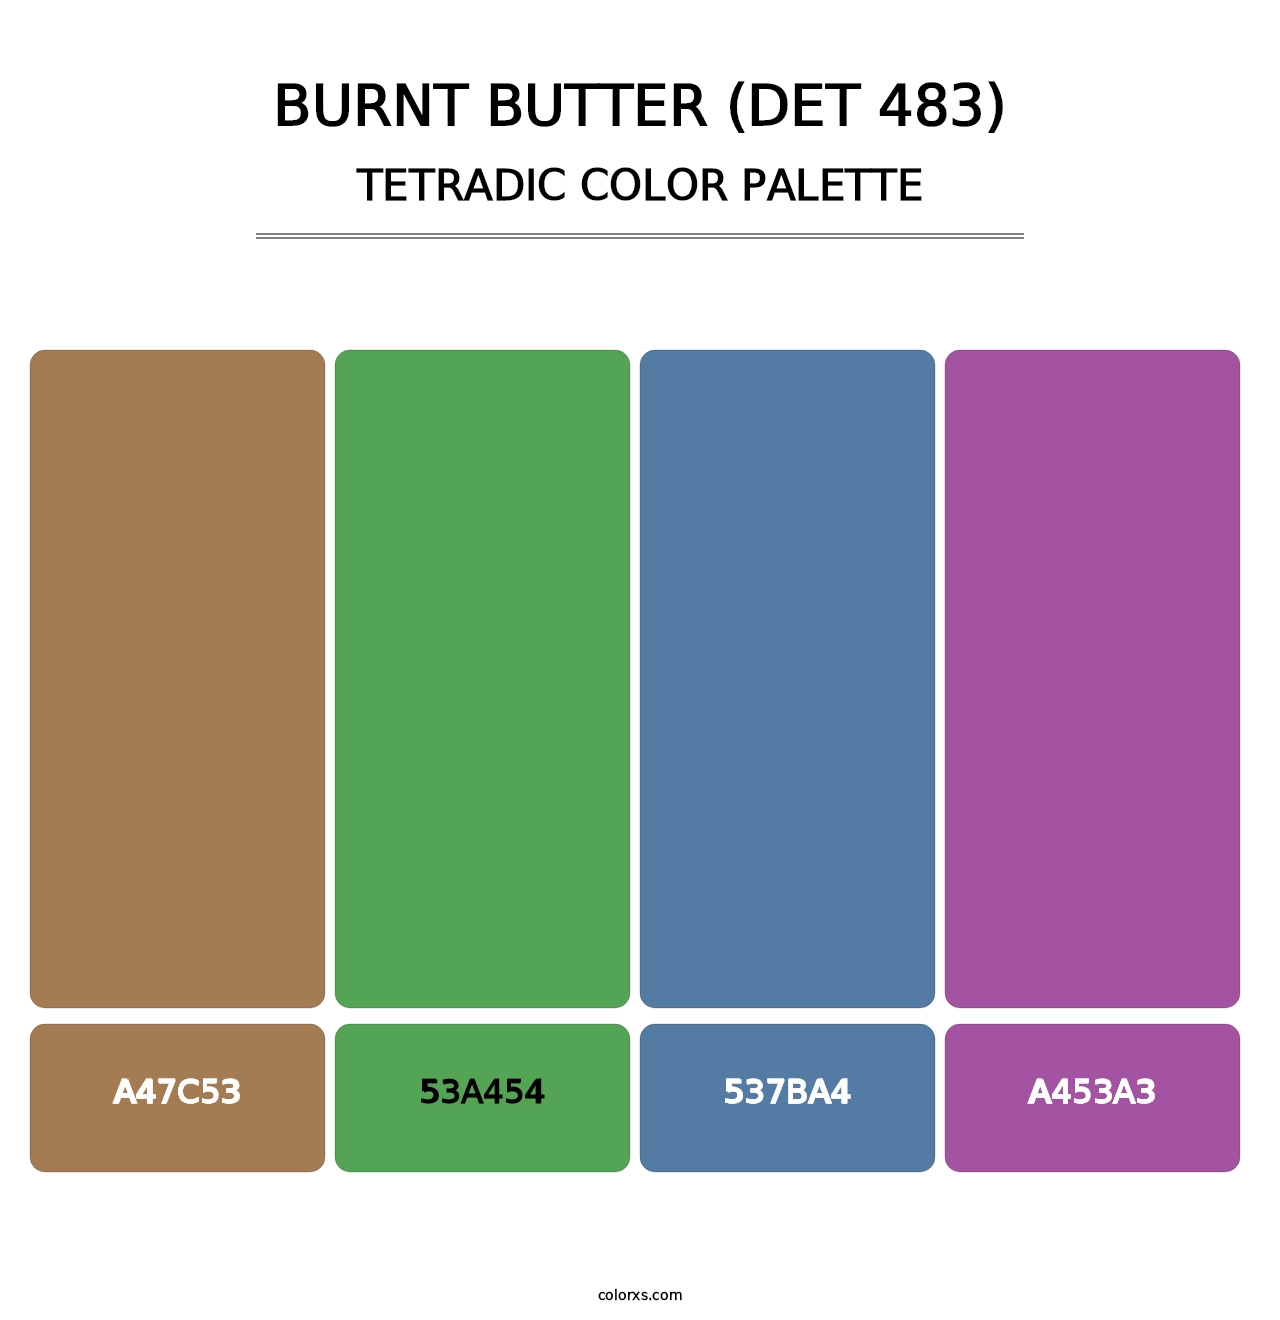 Burnt Butter (DET 483) - Tetradic Color Palette